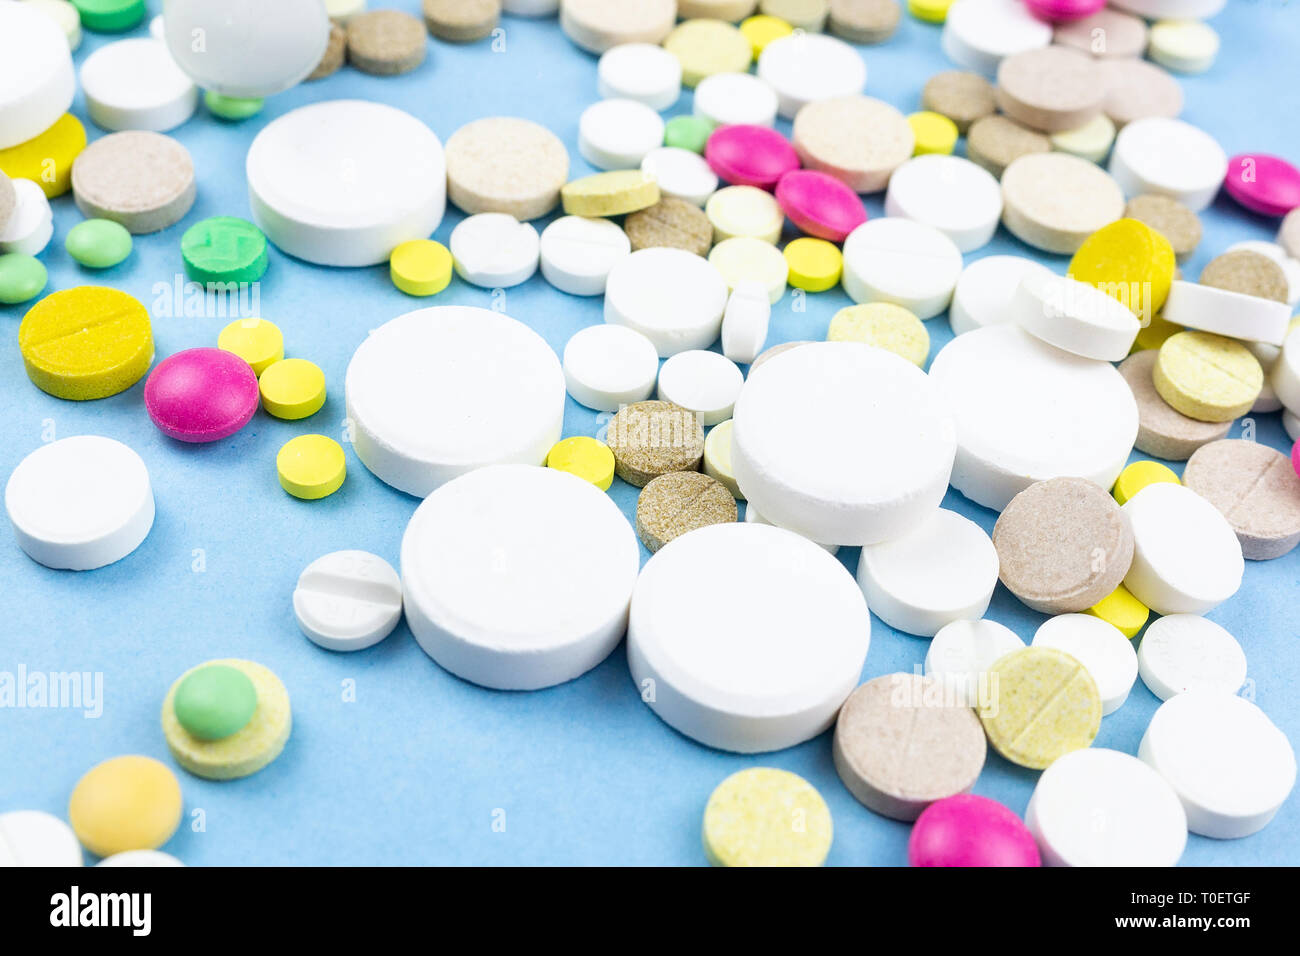 Assortiti medicina farmaceutica pillole, compresse e capsule su sfondo blu Foto Stock